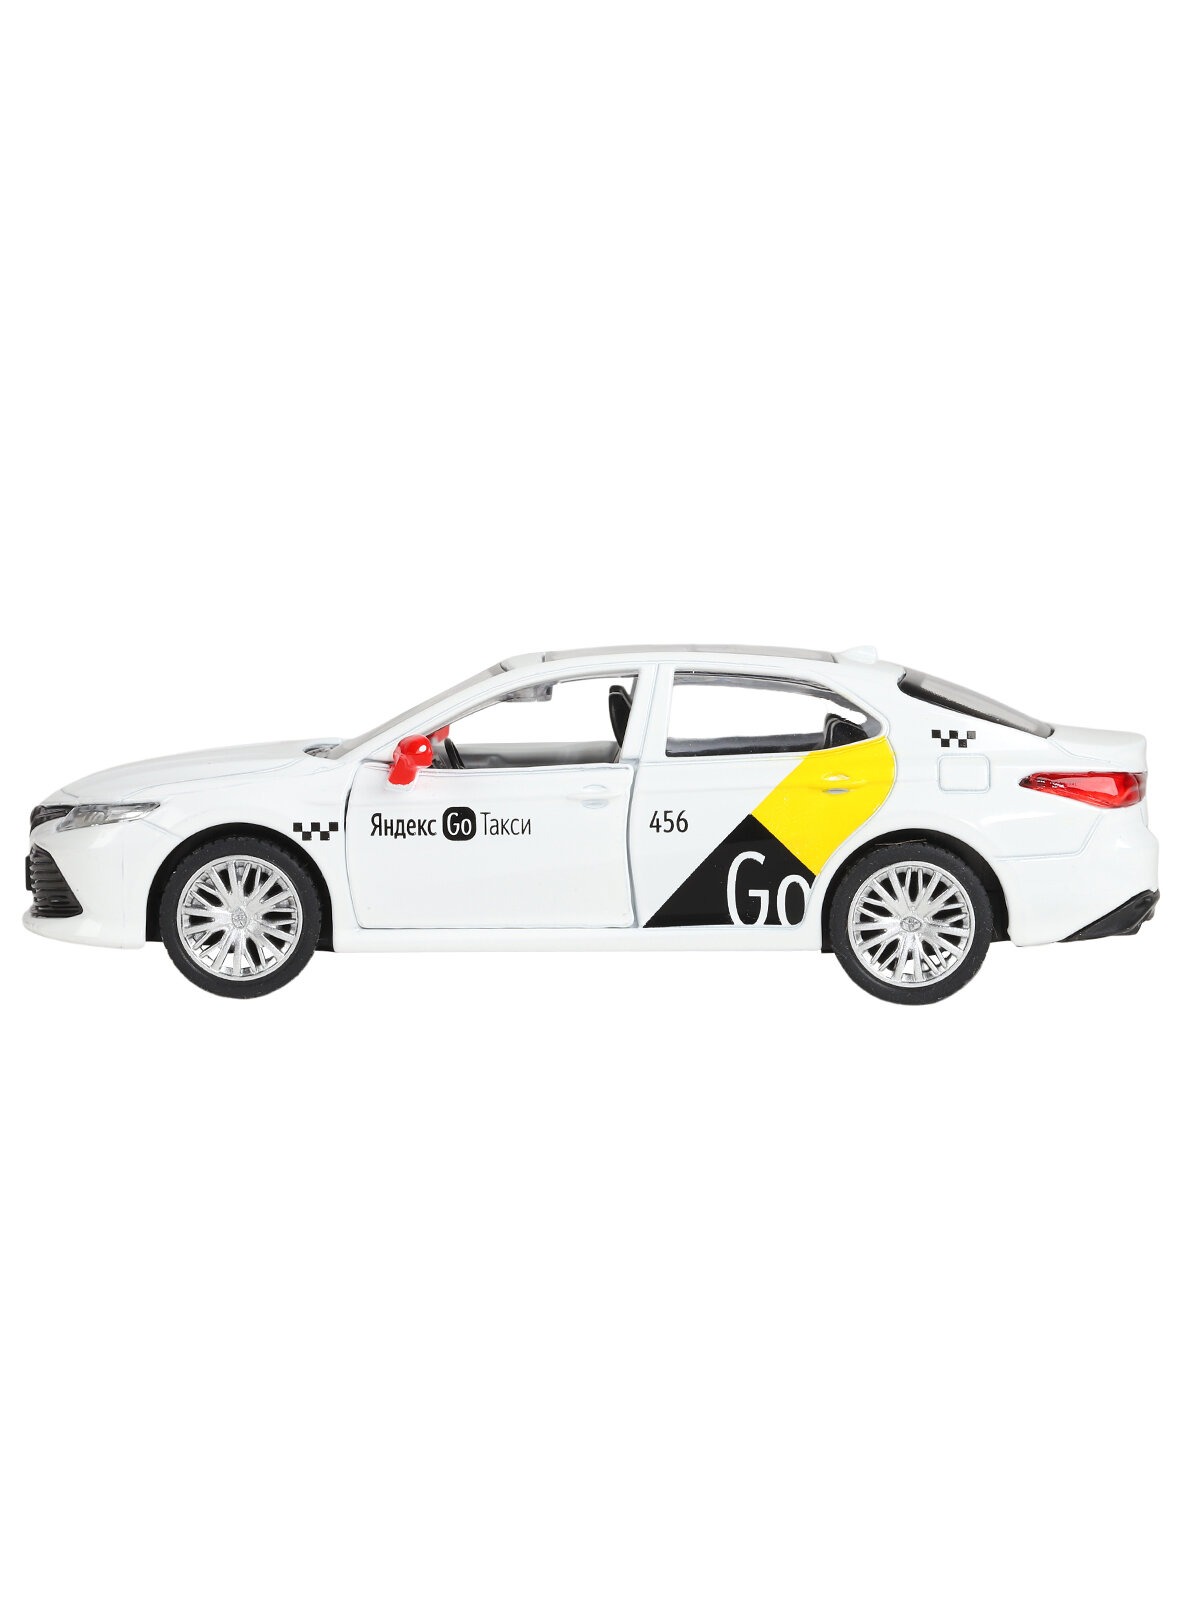 Машинка металлическая Яндекс GO 1:43 Toyota Camry озвучено Алисой цвет белый JB1251484 - фото 11